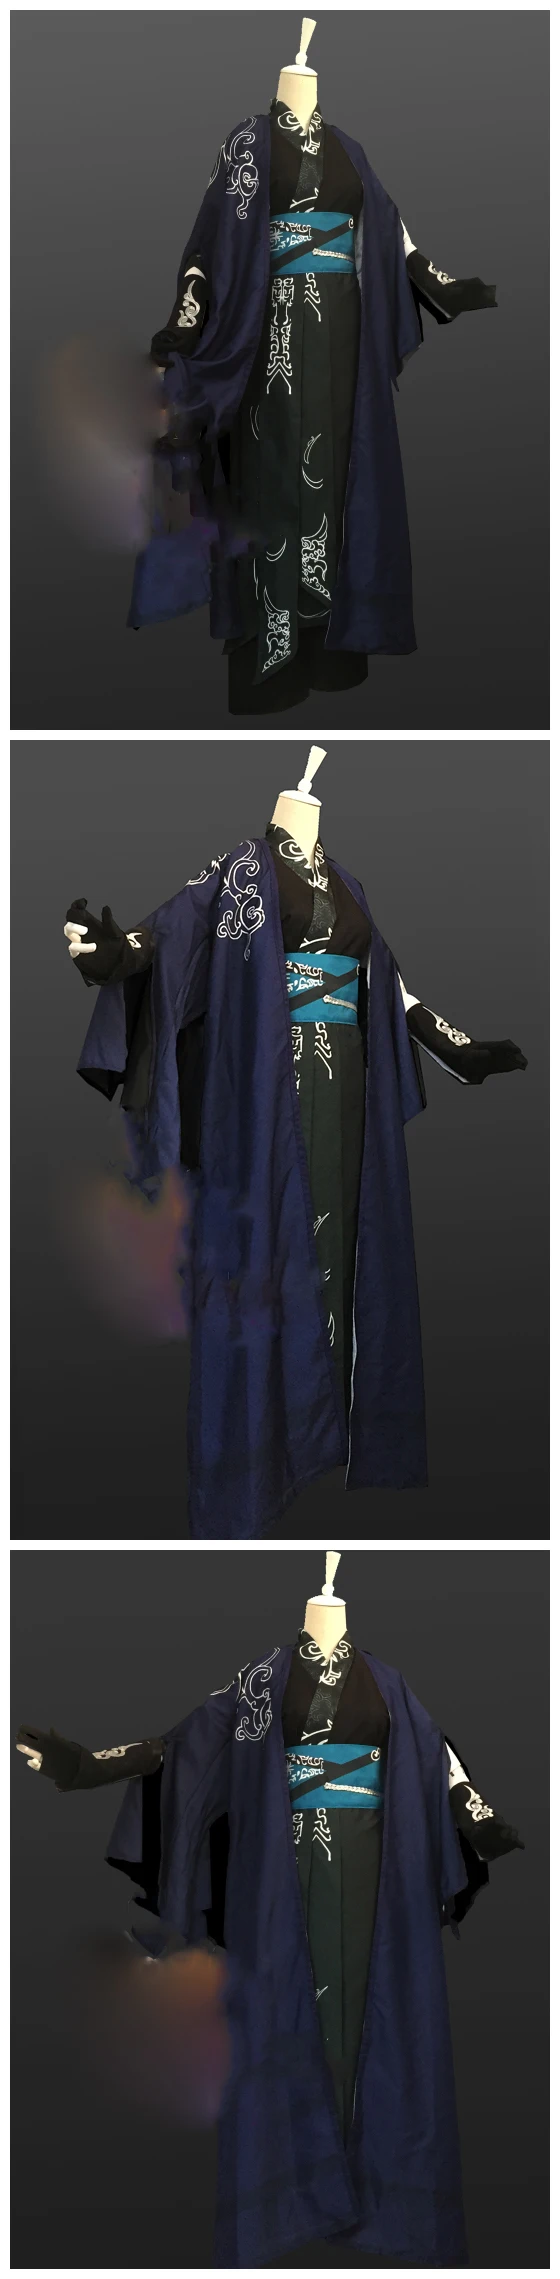 Бянь Ло Хэн мобильная игра Легенда меча и феи VI Cos мужской костюм черный принт мужской ханьфу